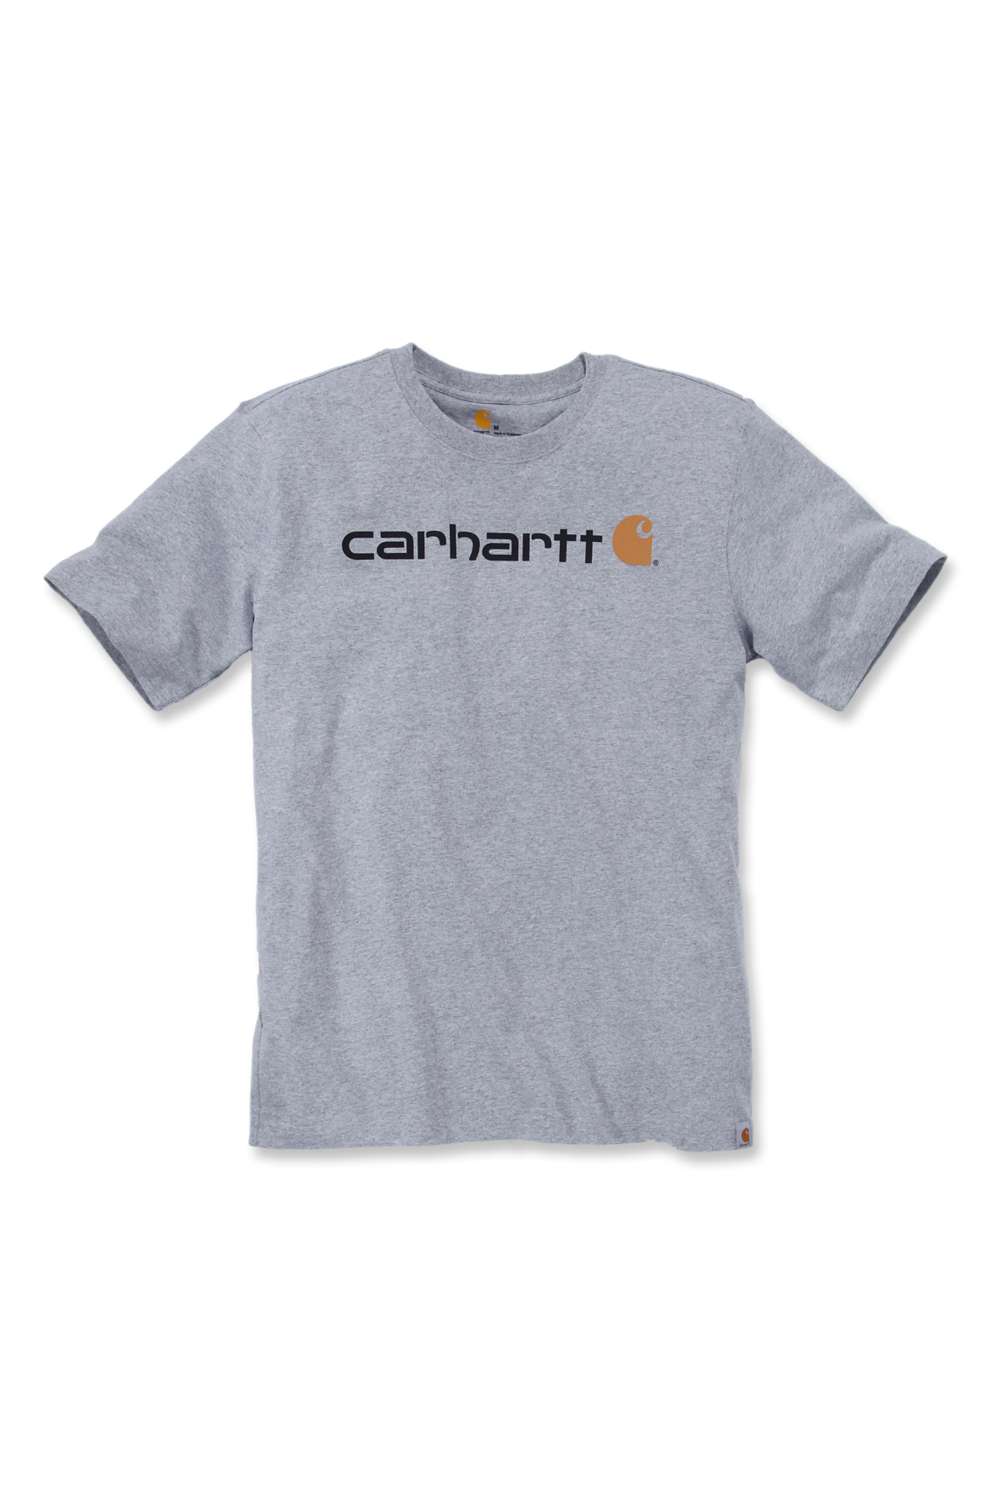 Herren-T-Shirt Relaxed Fit Mit Carhartt-Logo